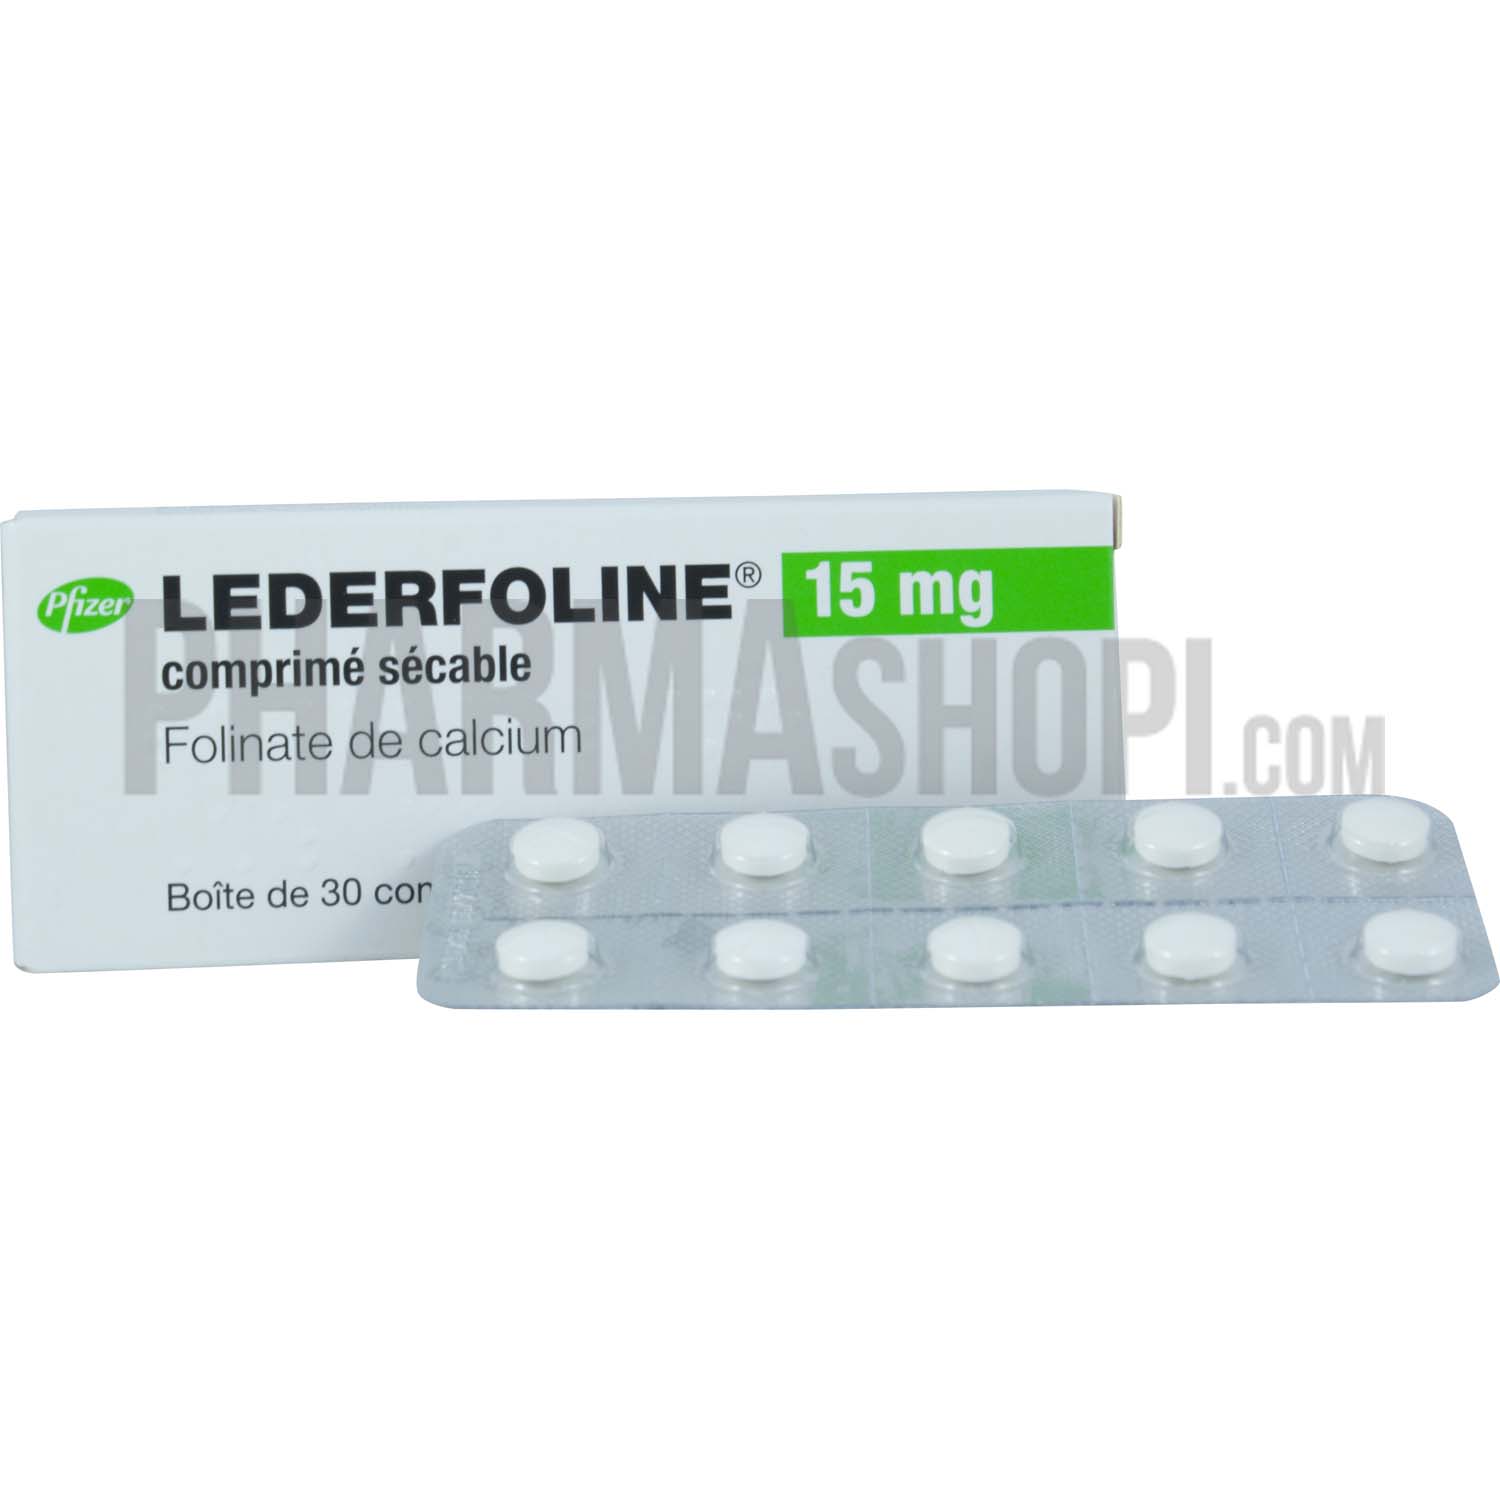 Lederfoline 15mg comprimé sécable - boîte de 30 comprimés Pfizer ...